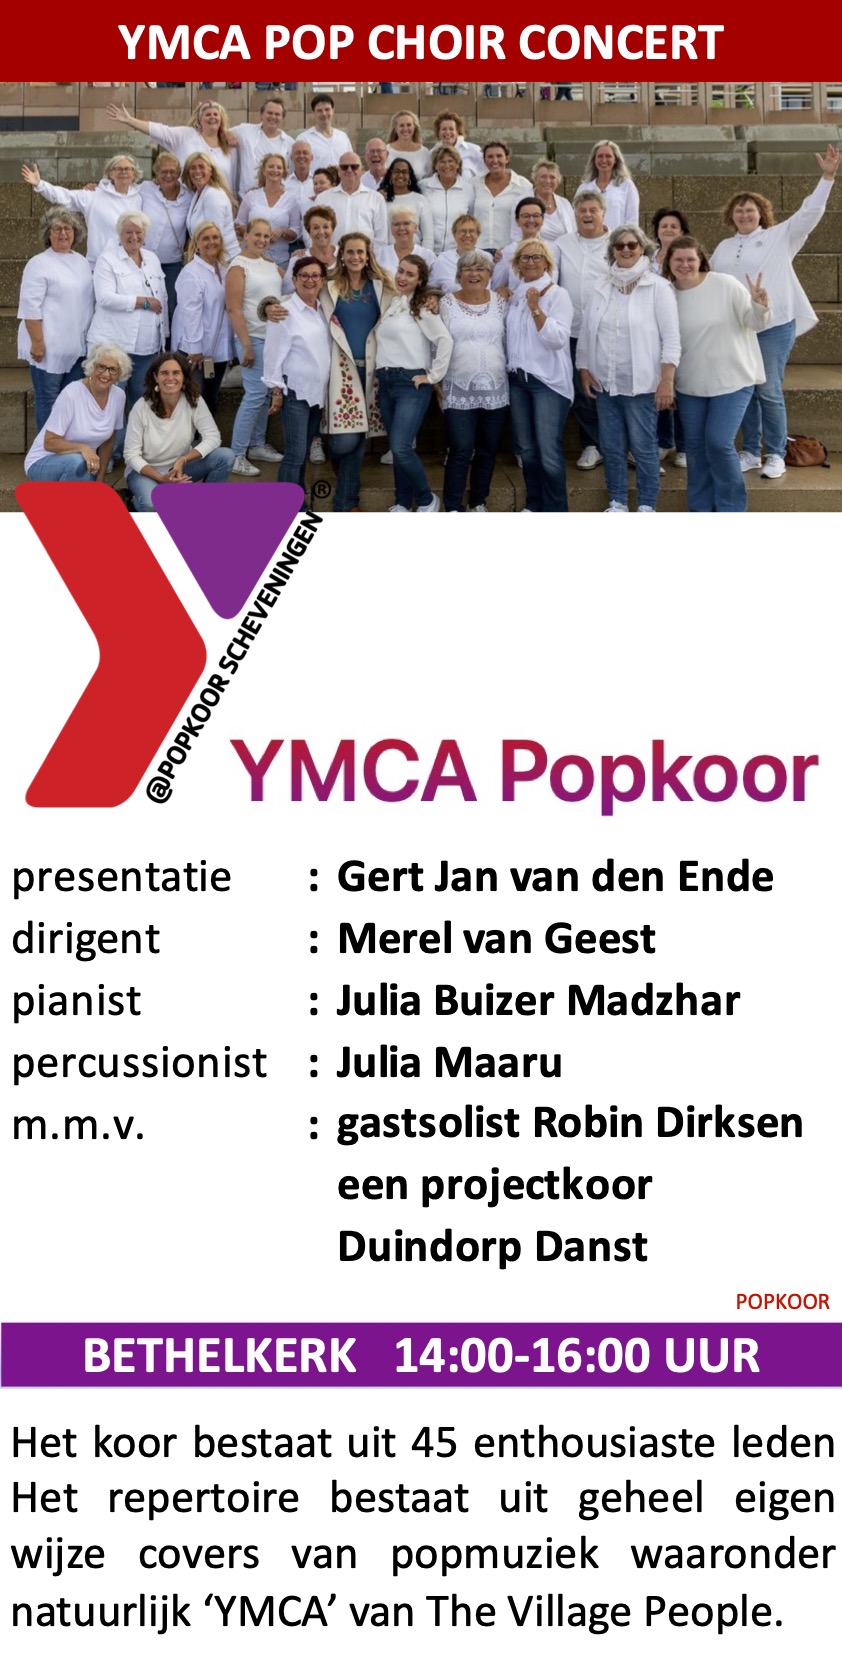 YMCA Popkoor Concert Scheveningen Pop Choir